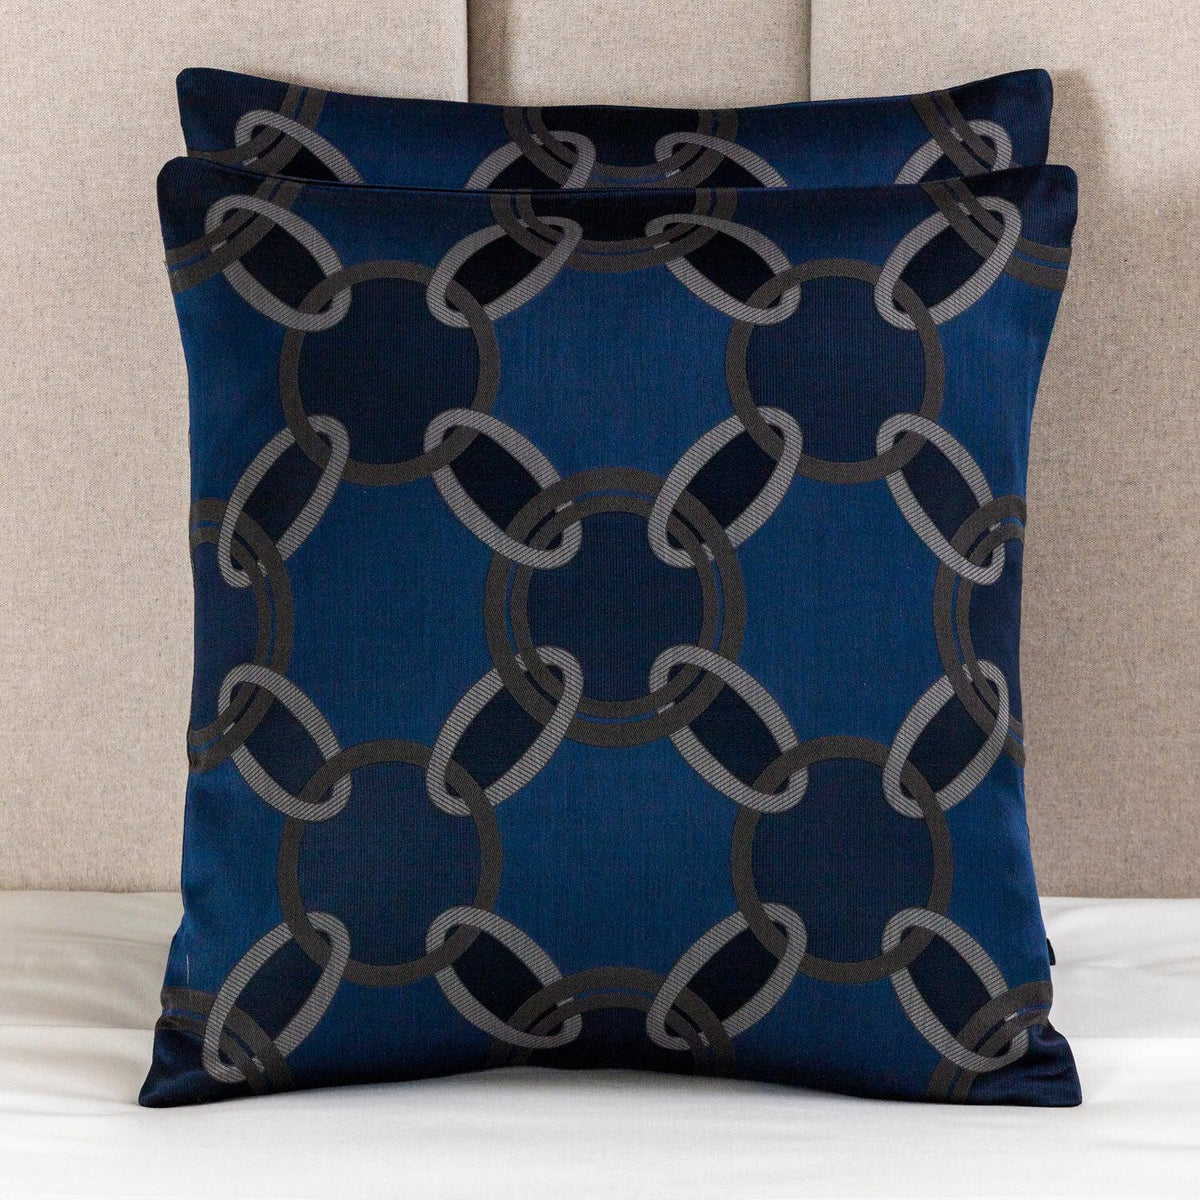 Lux Chains Decorative Pillow